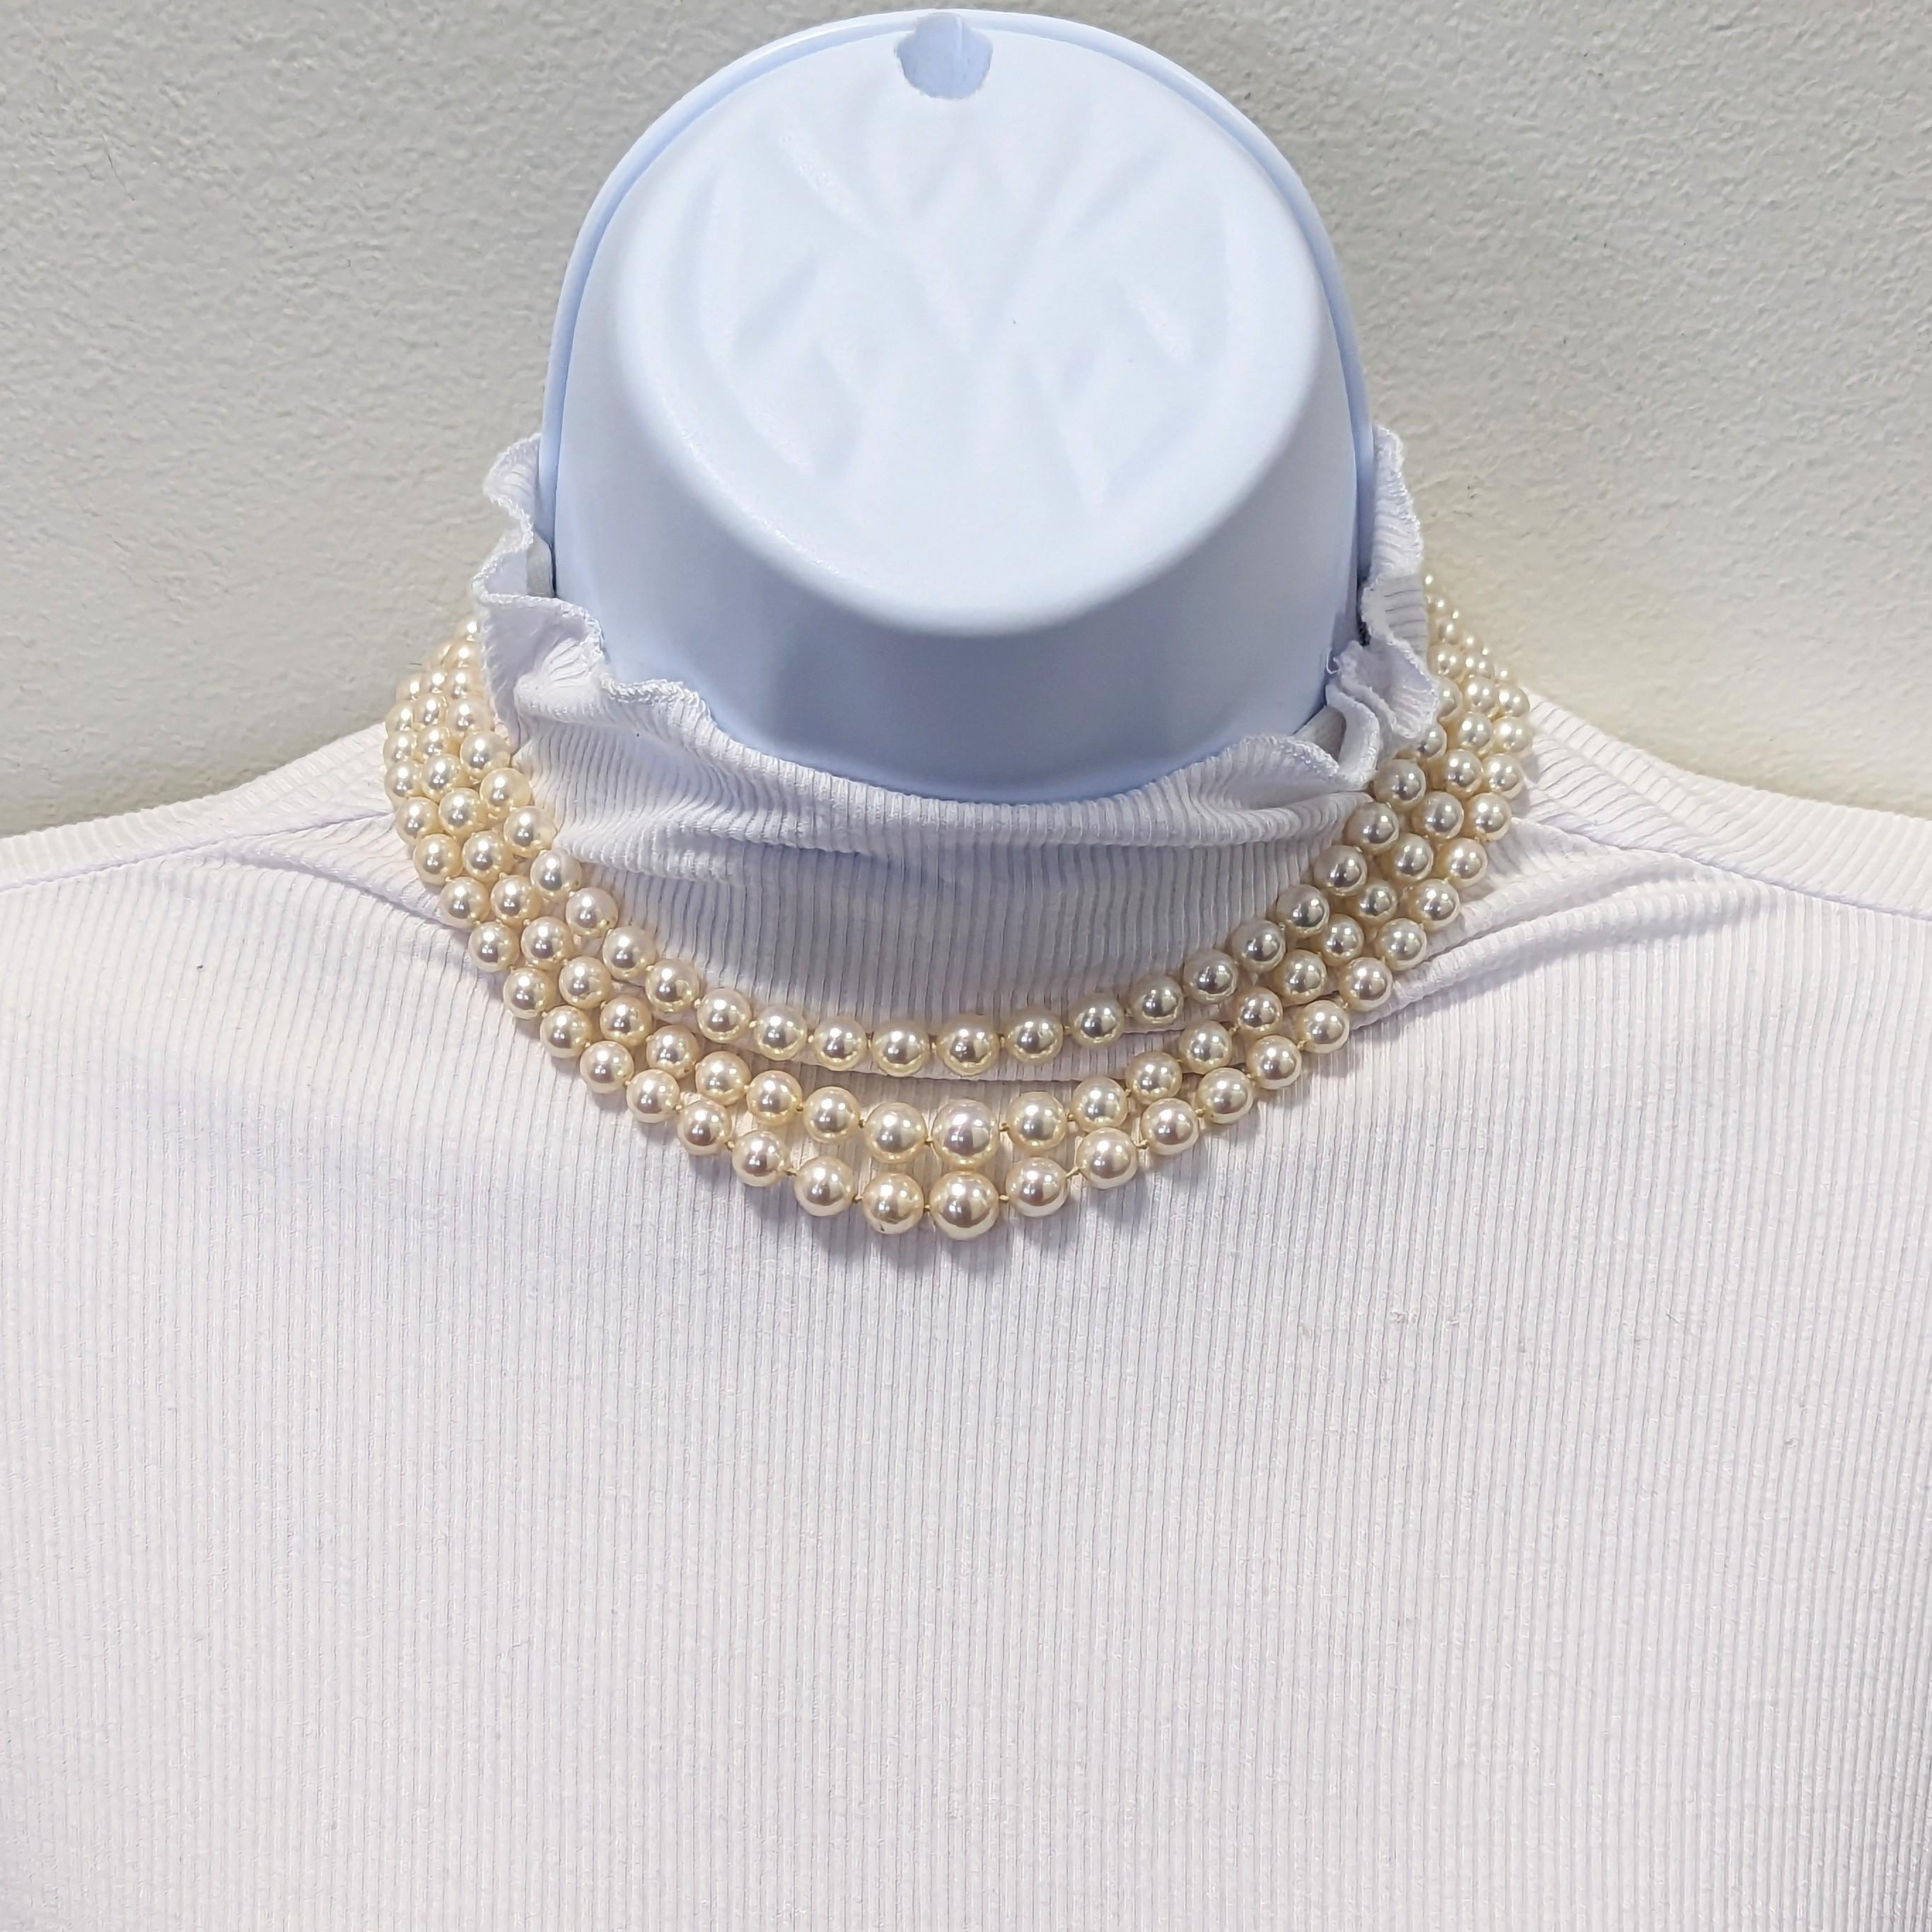 Magnifiques perles rondes blanches avec un diamant blanc rond de bonne qualité fait à la main fermoir en or blanc 18k.  Trois rangs de perles imbriqués.  Un look élégant et sophistiqué.